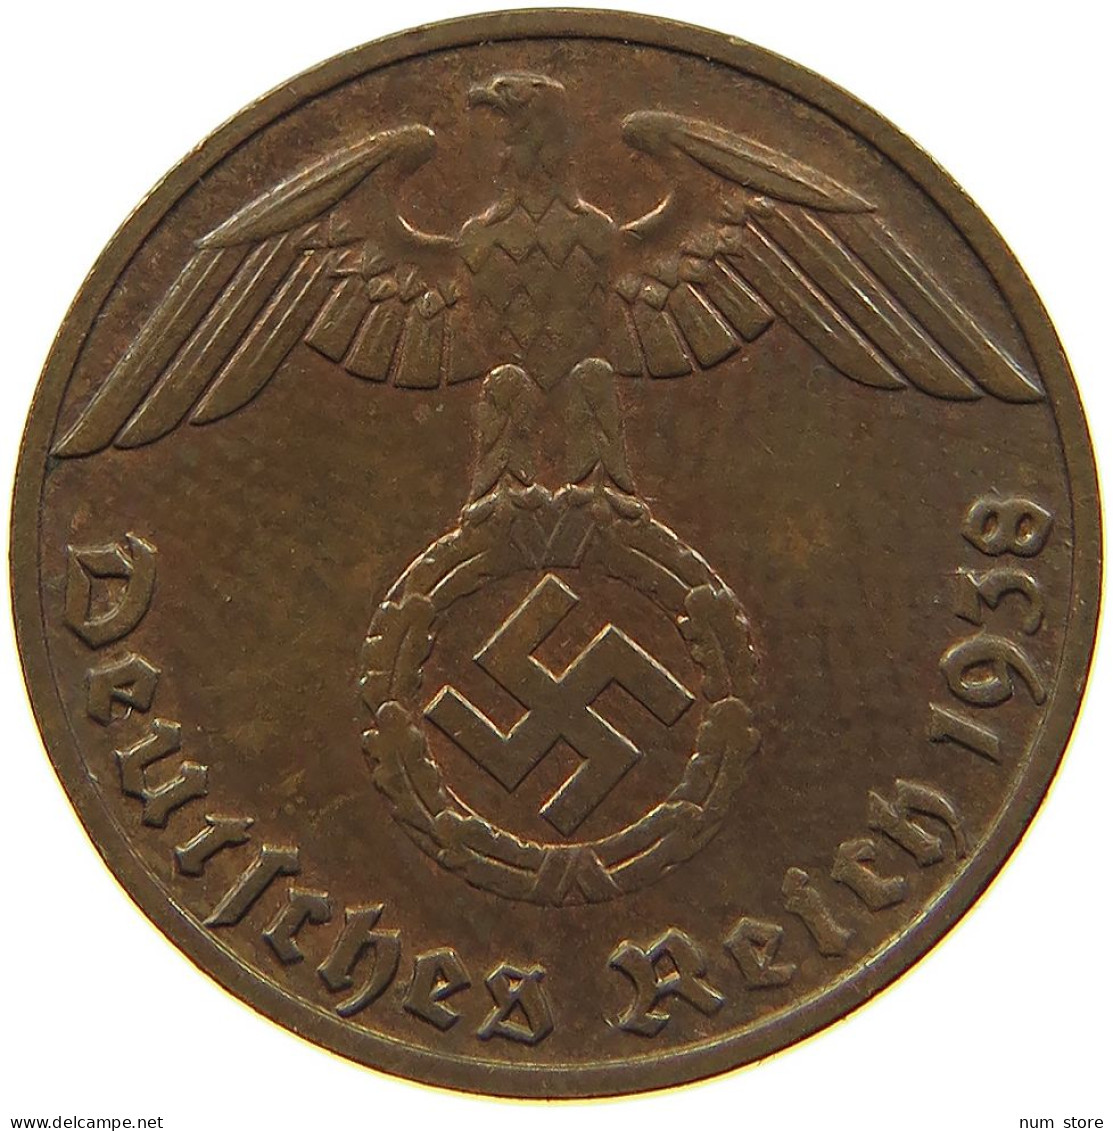 GERMANY 1 REICHSPFENNIG 1938 E #s091 1189 - 1 Reichspfennig